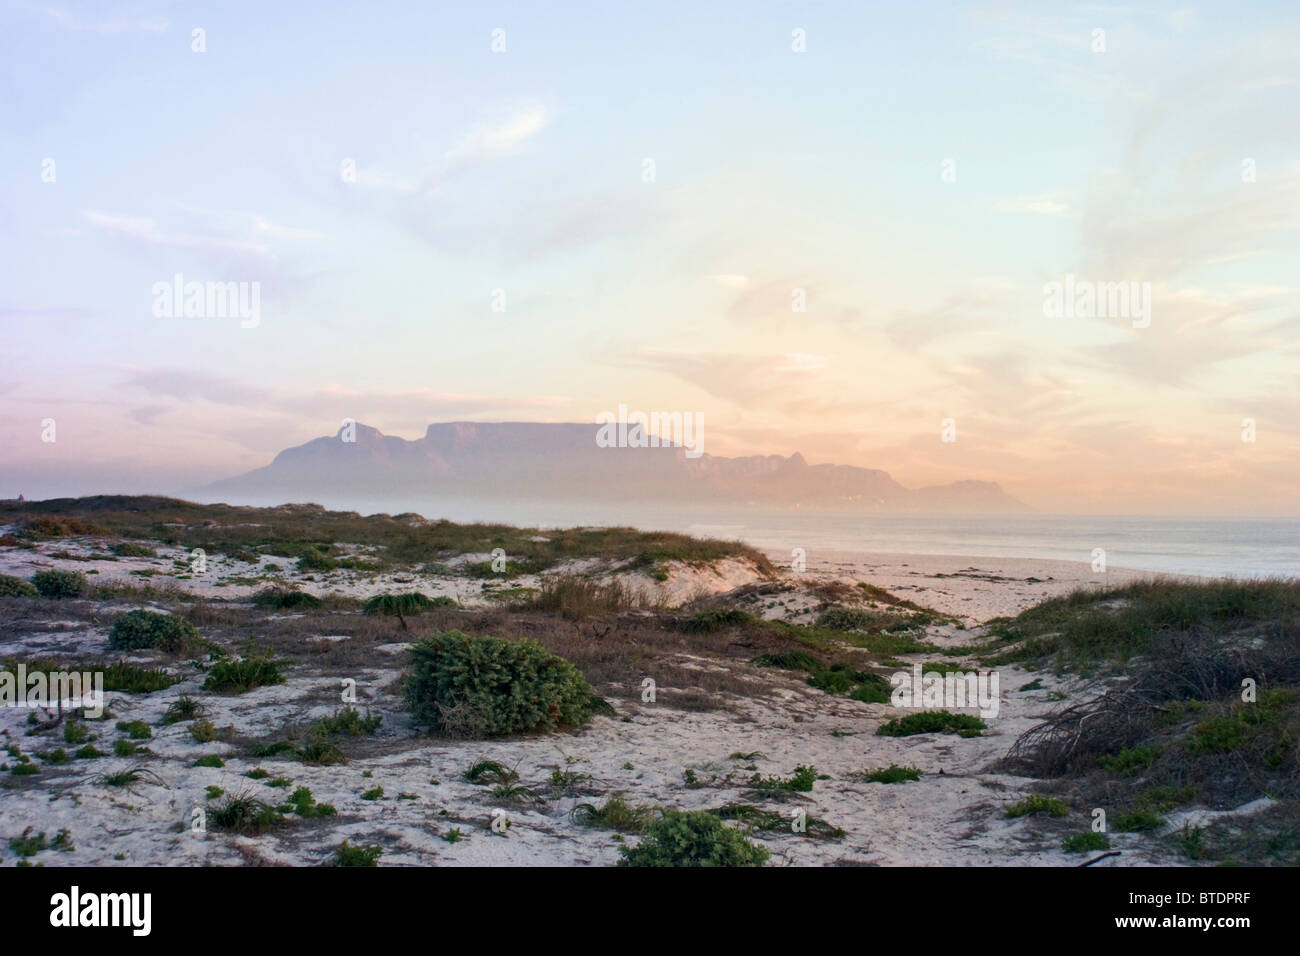 Ein Blick über die Dünen an der Küste bei Sonnenuntergang in Richtung Tafelberg in der Ferne Stockfoto